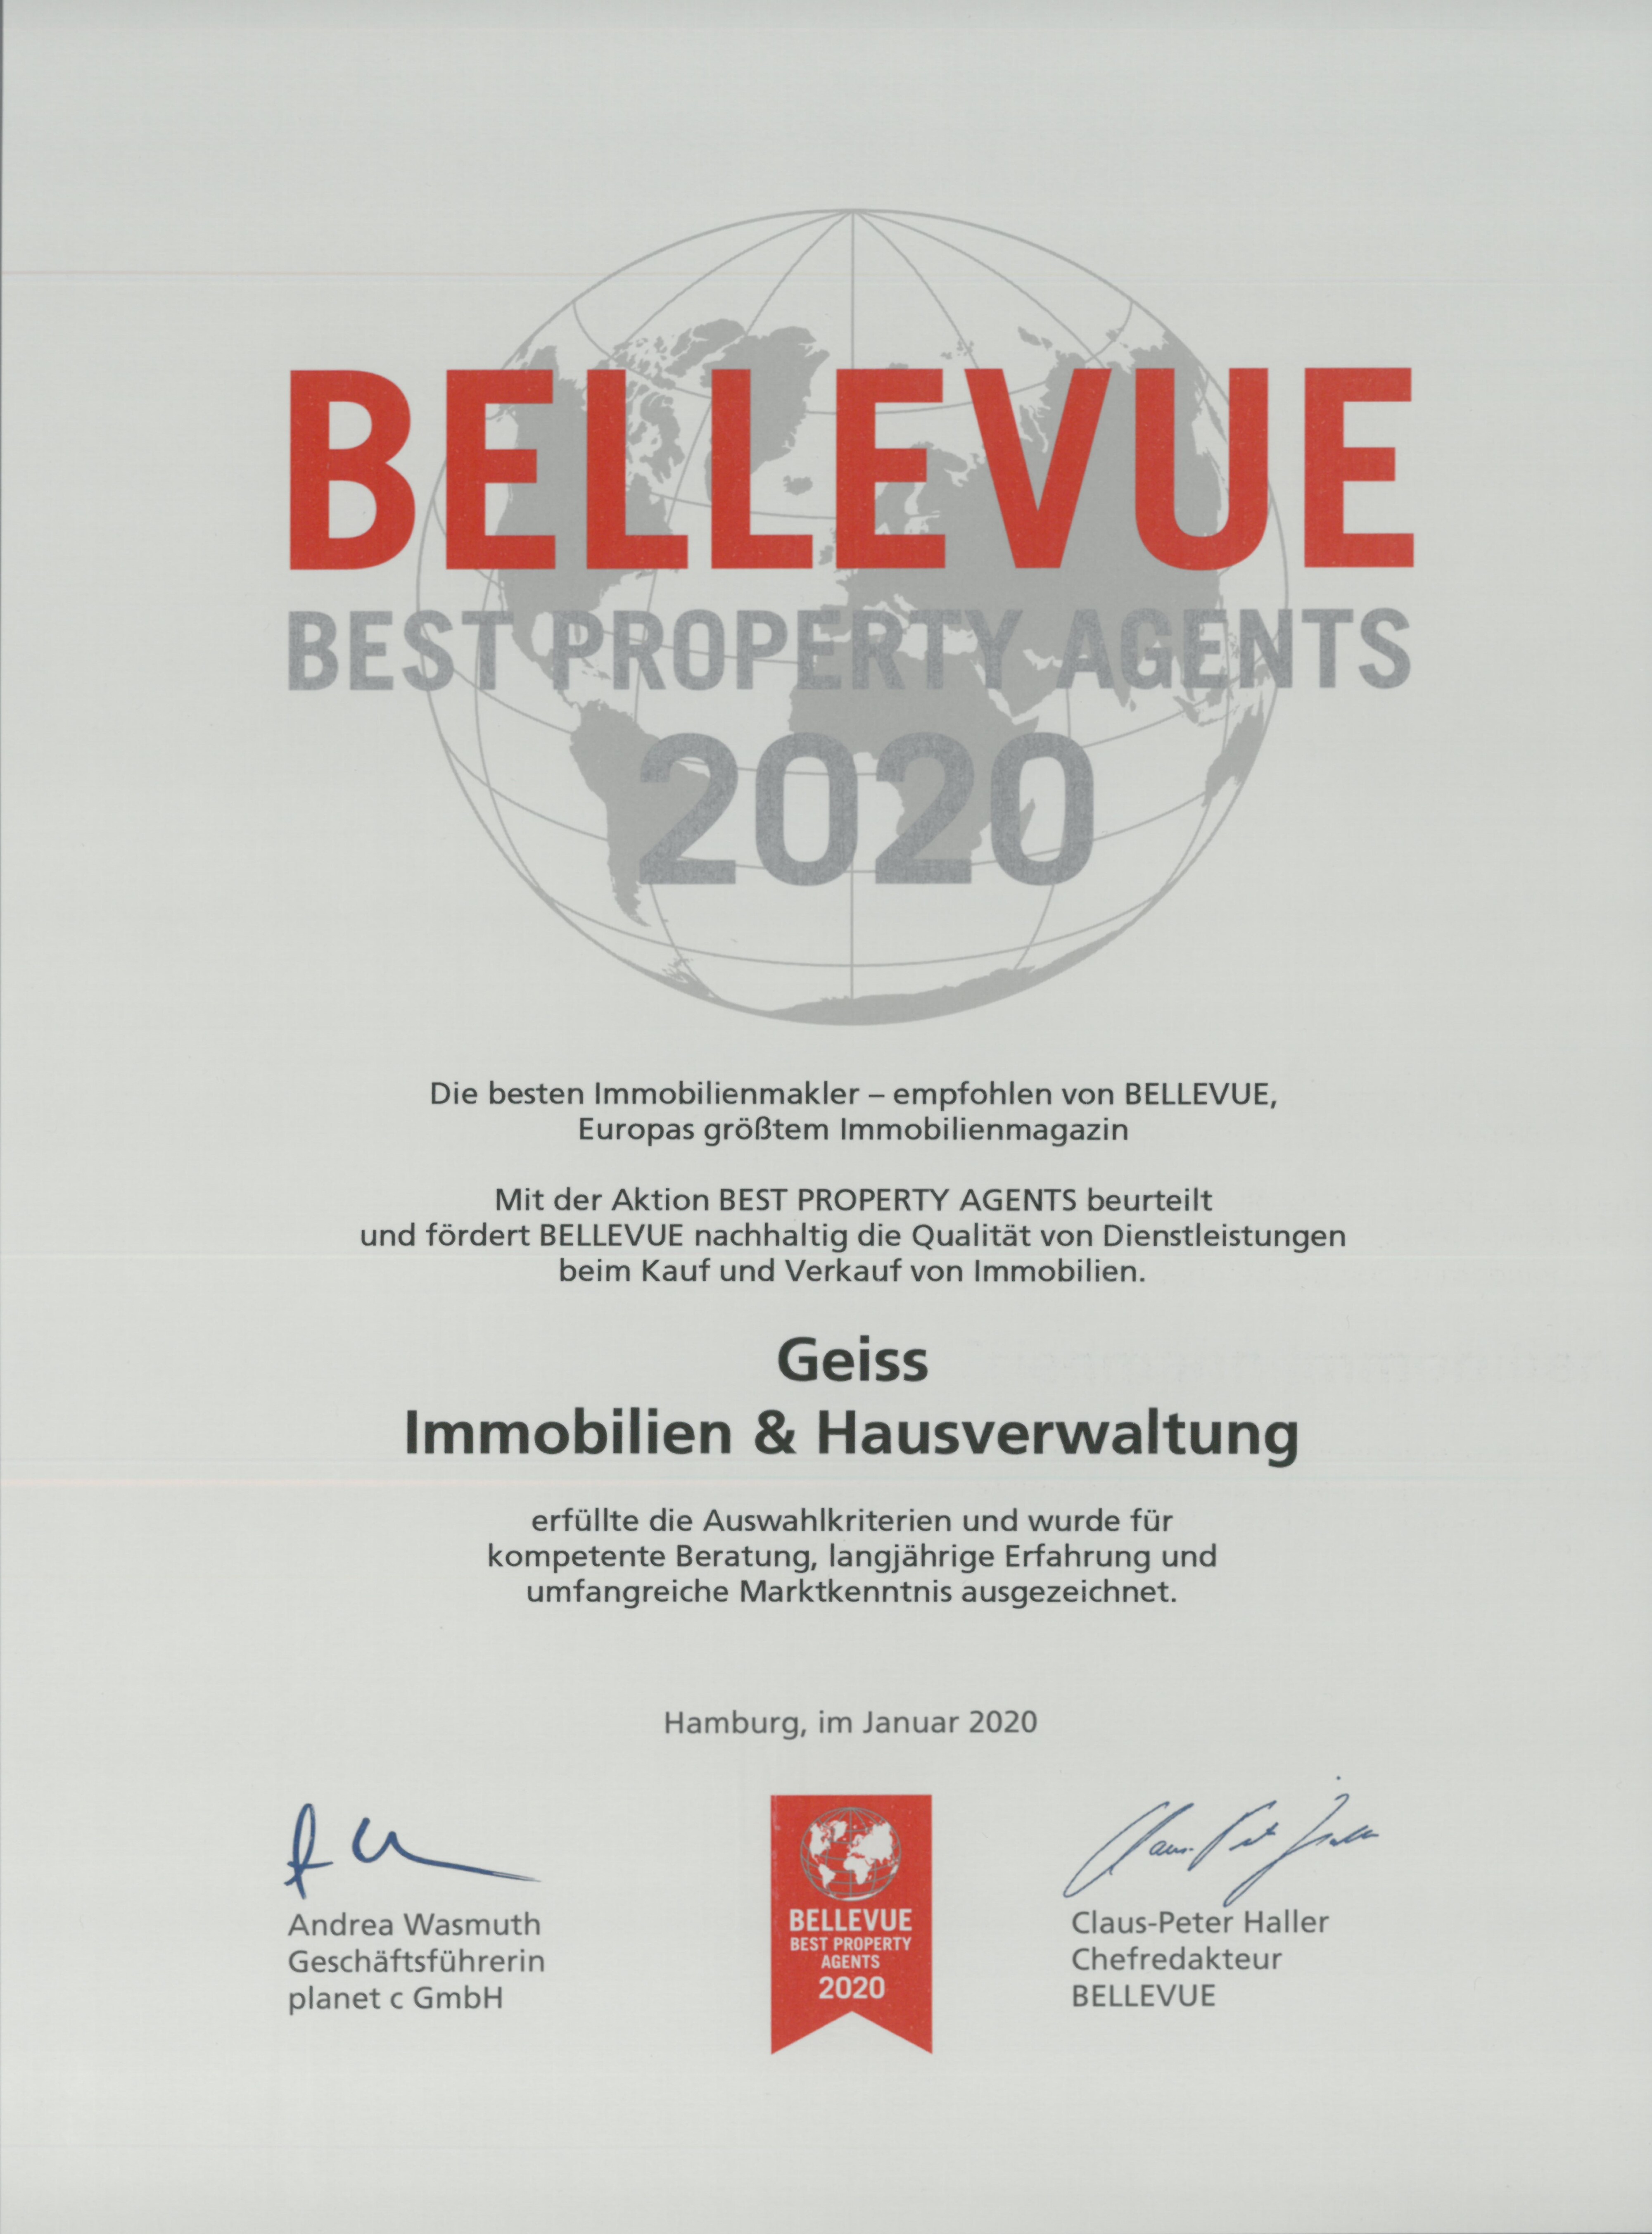 Bellevue Best Property Agents 2020